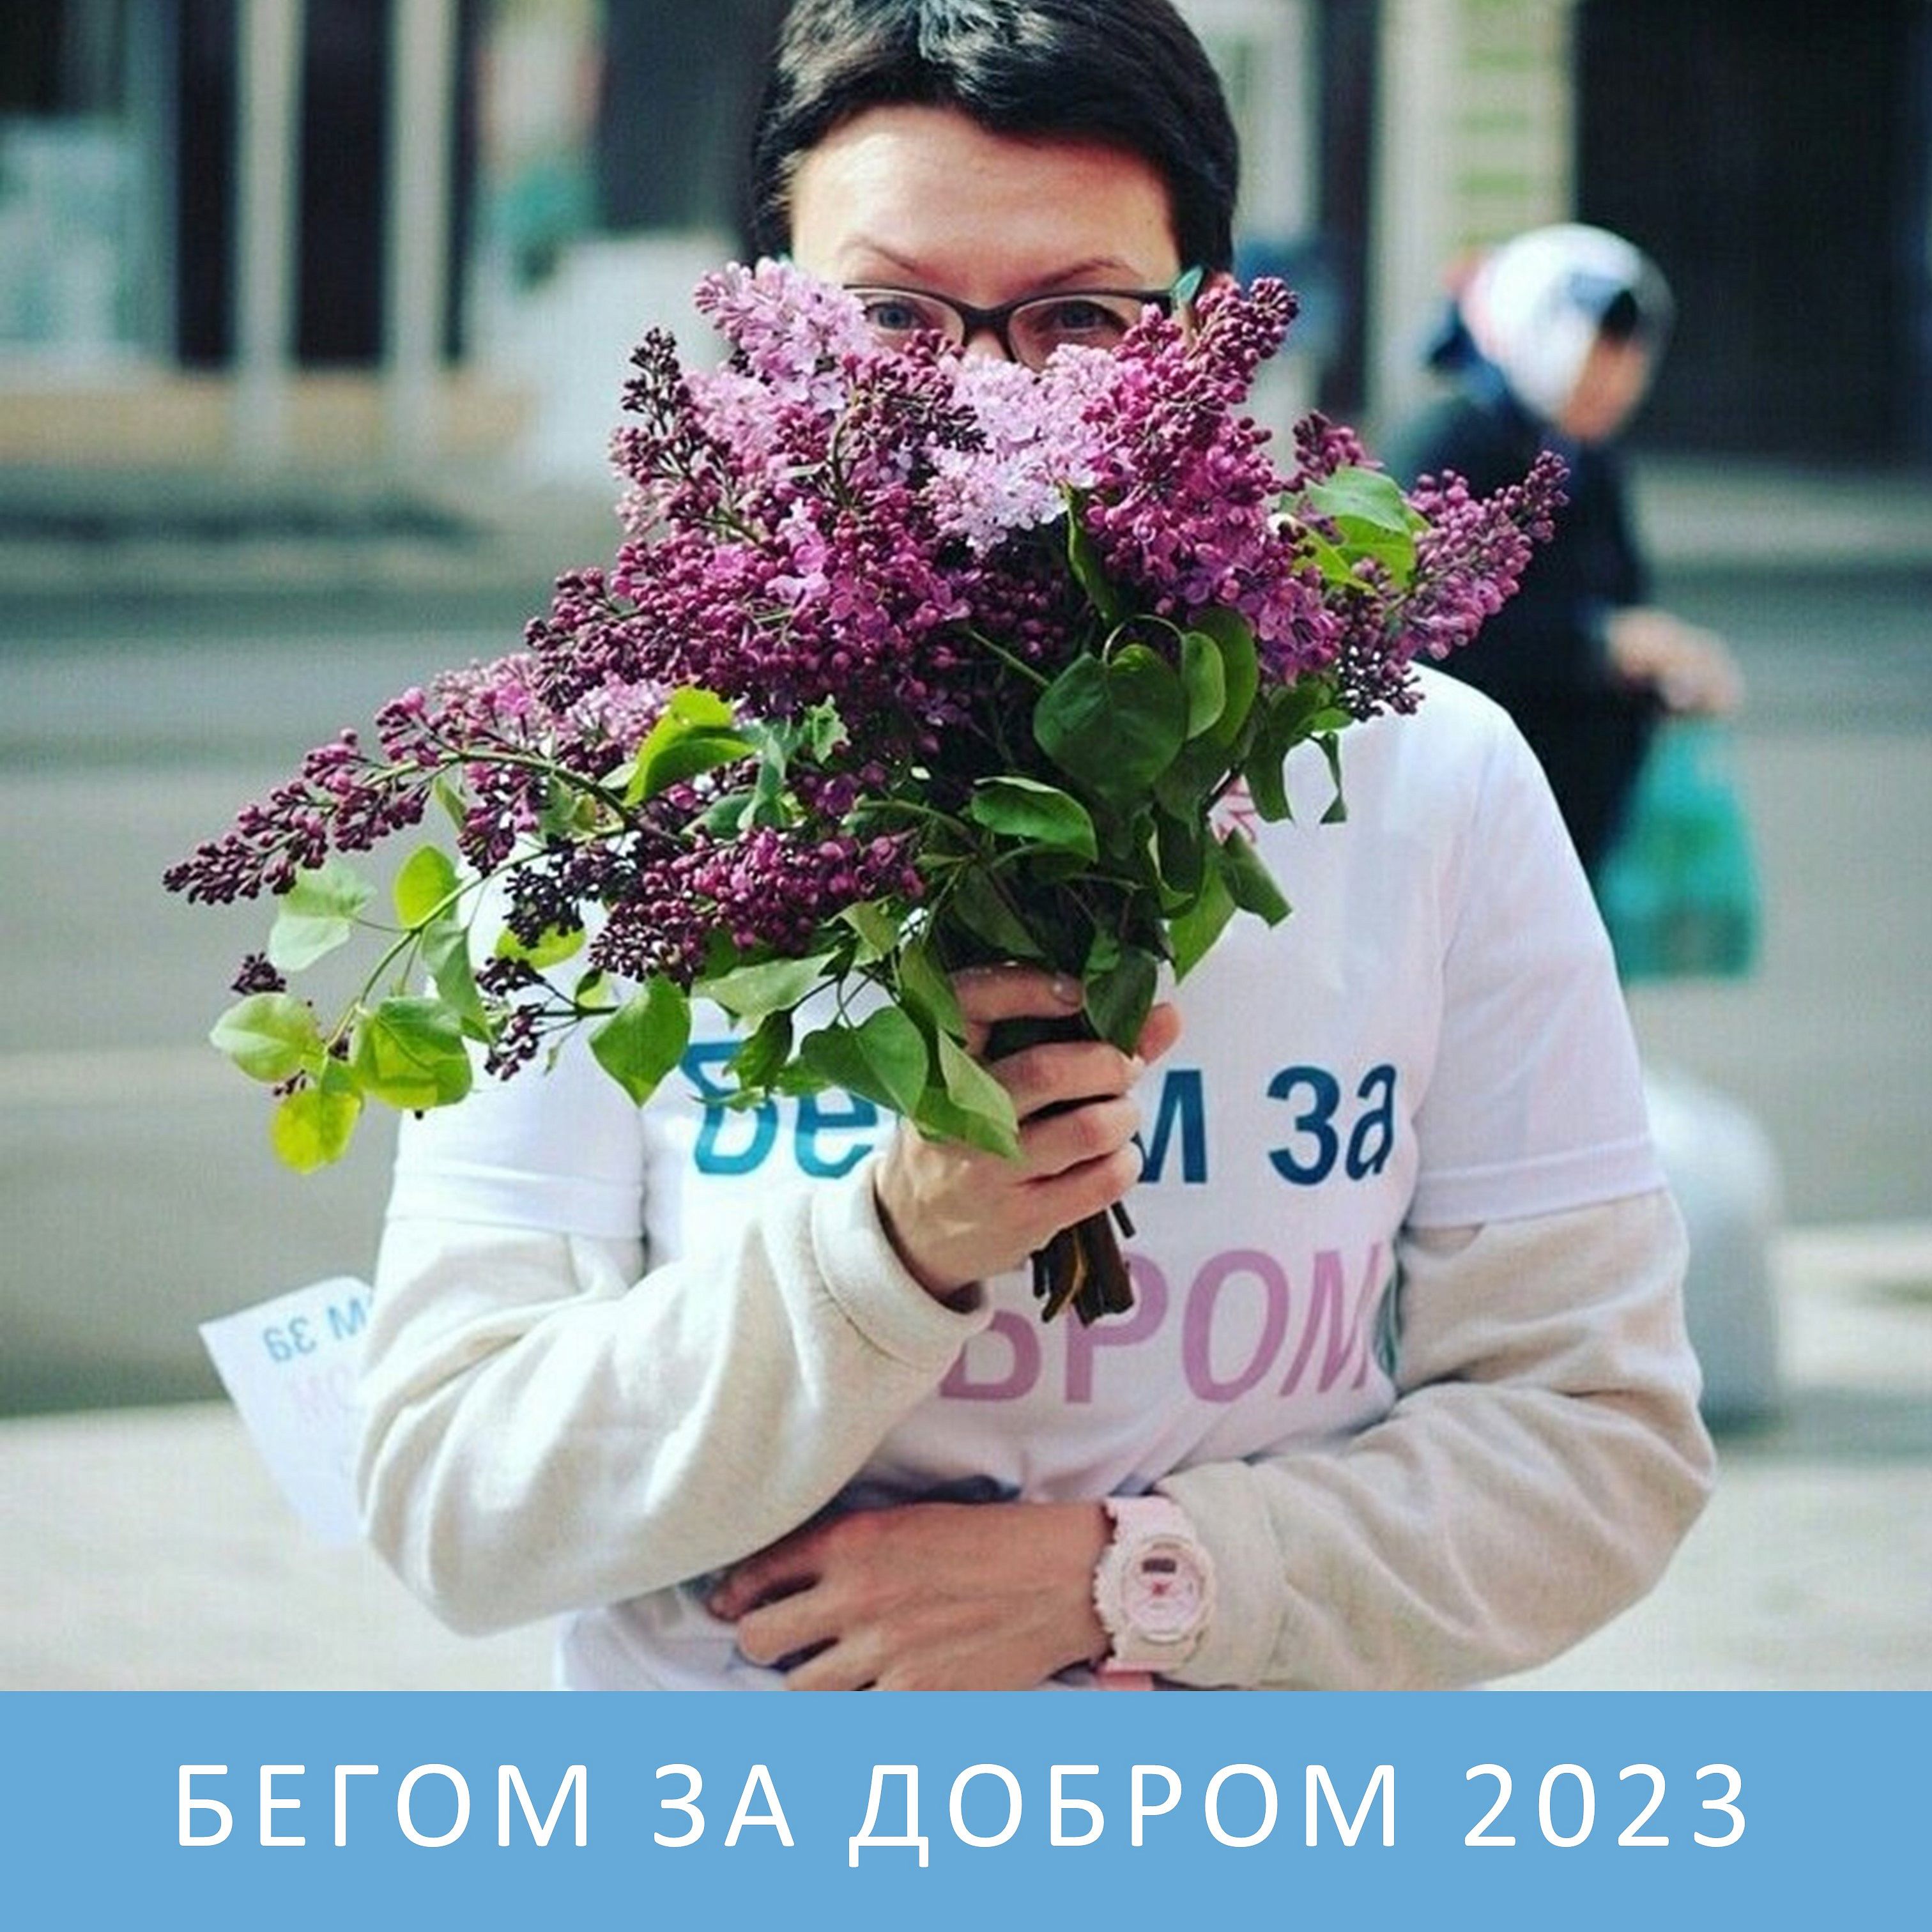 Приглашаем на 8-й благотворительный спортивный марафон «БЕГОМ ЗА ДОБРОМ 2023»!